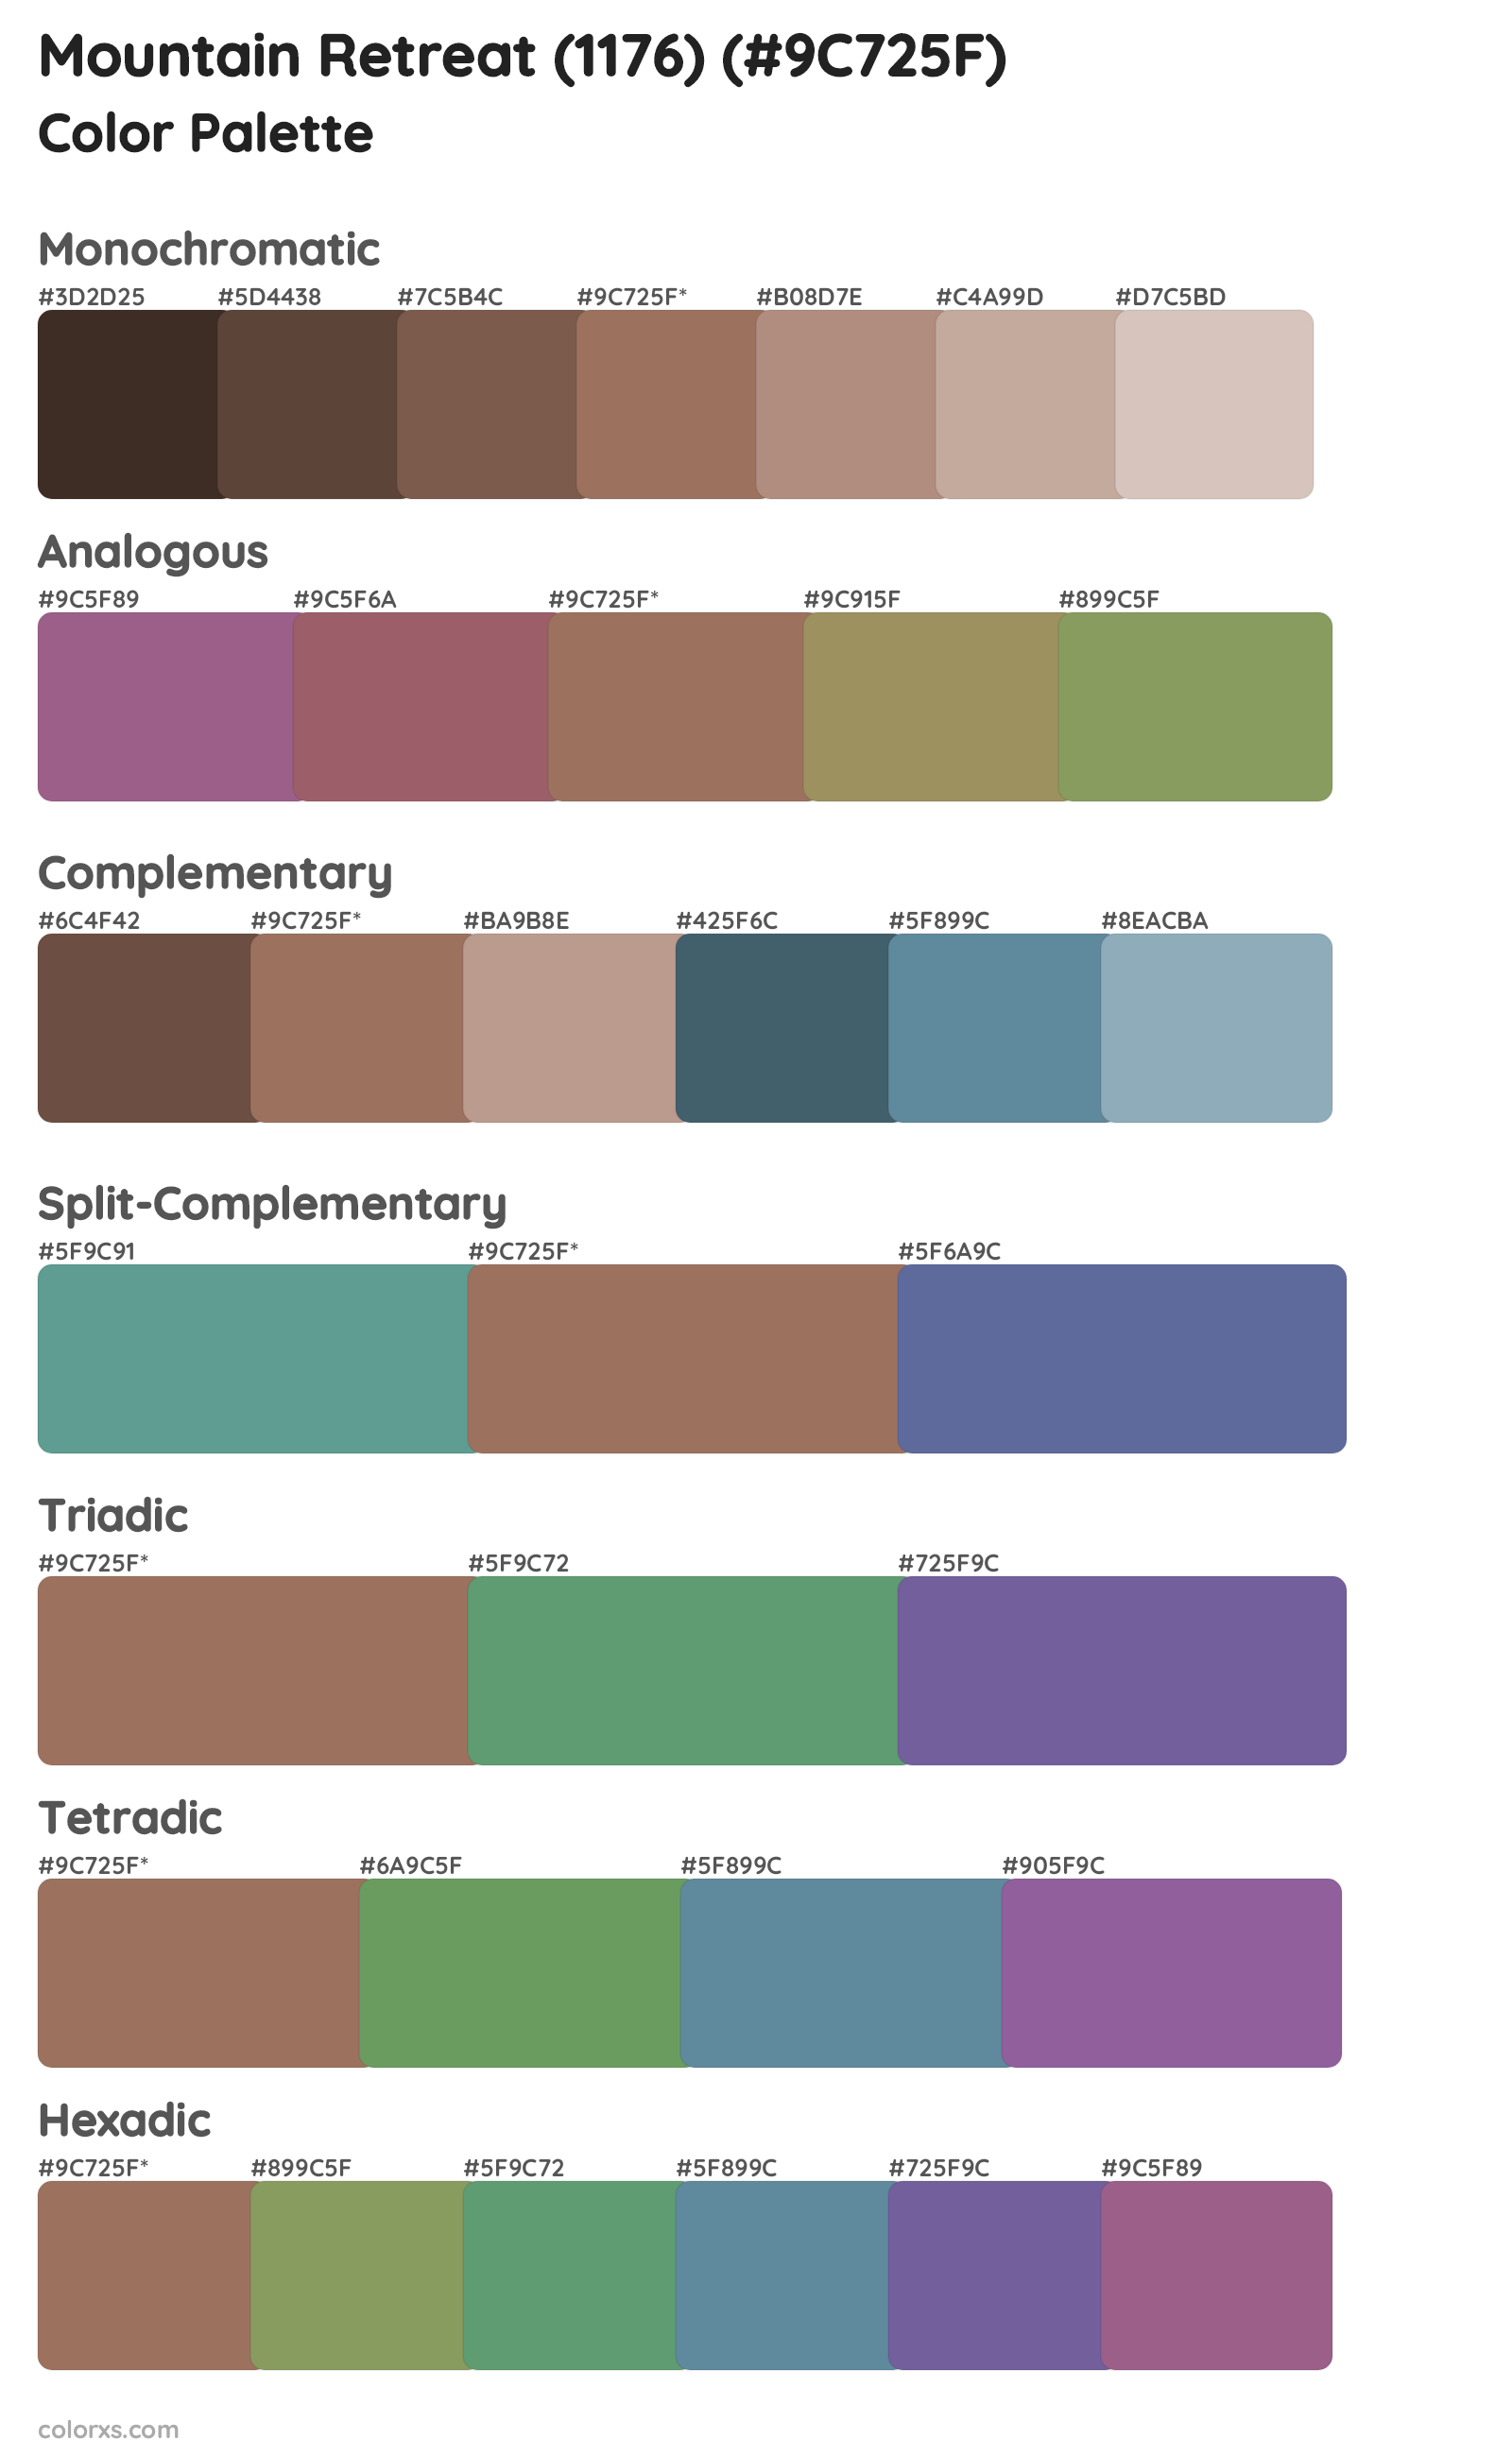 Mountain Retreat (1176) Color Scheme Palettes